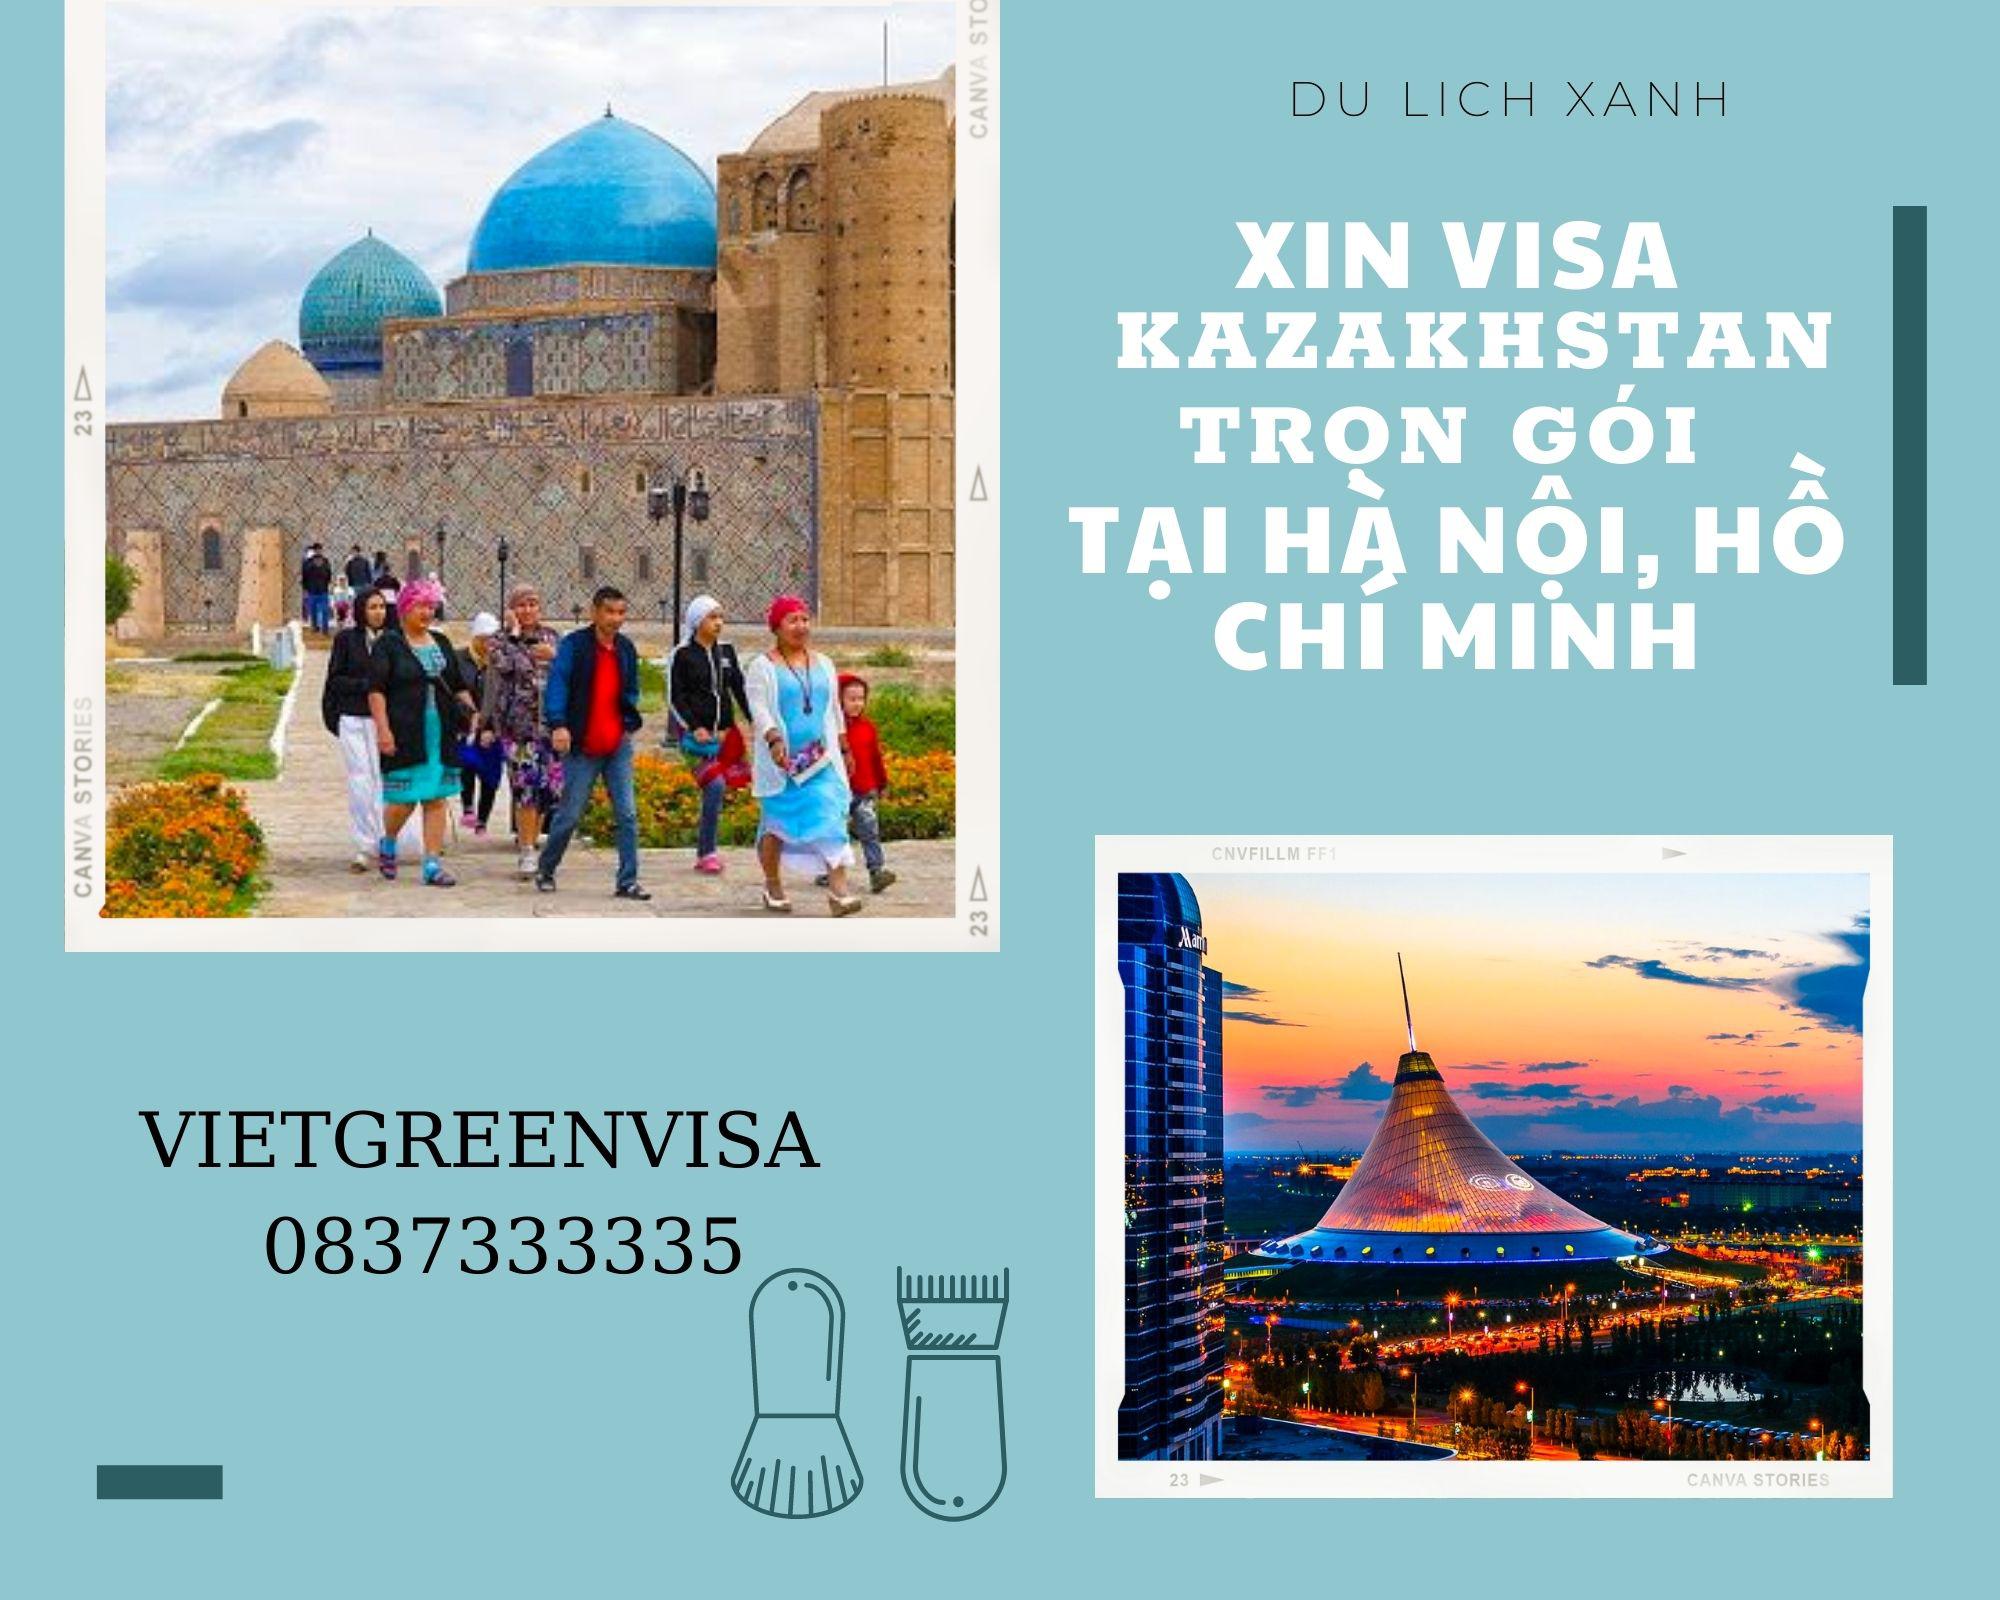 Xin Visa Kazakhstan trọn gói tại Hà Nội, Hồ Chí Minh